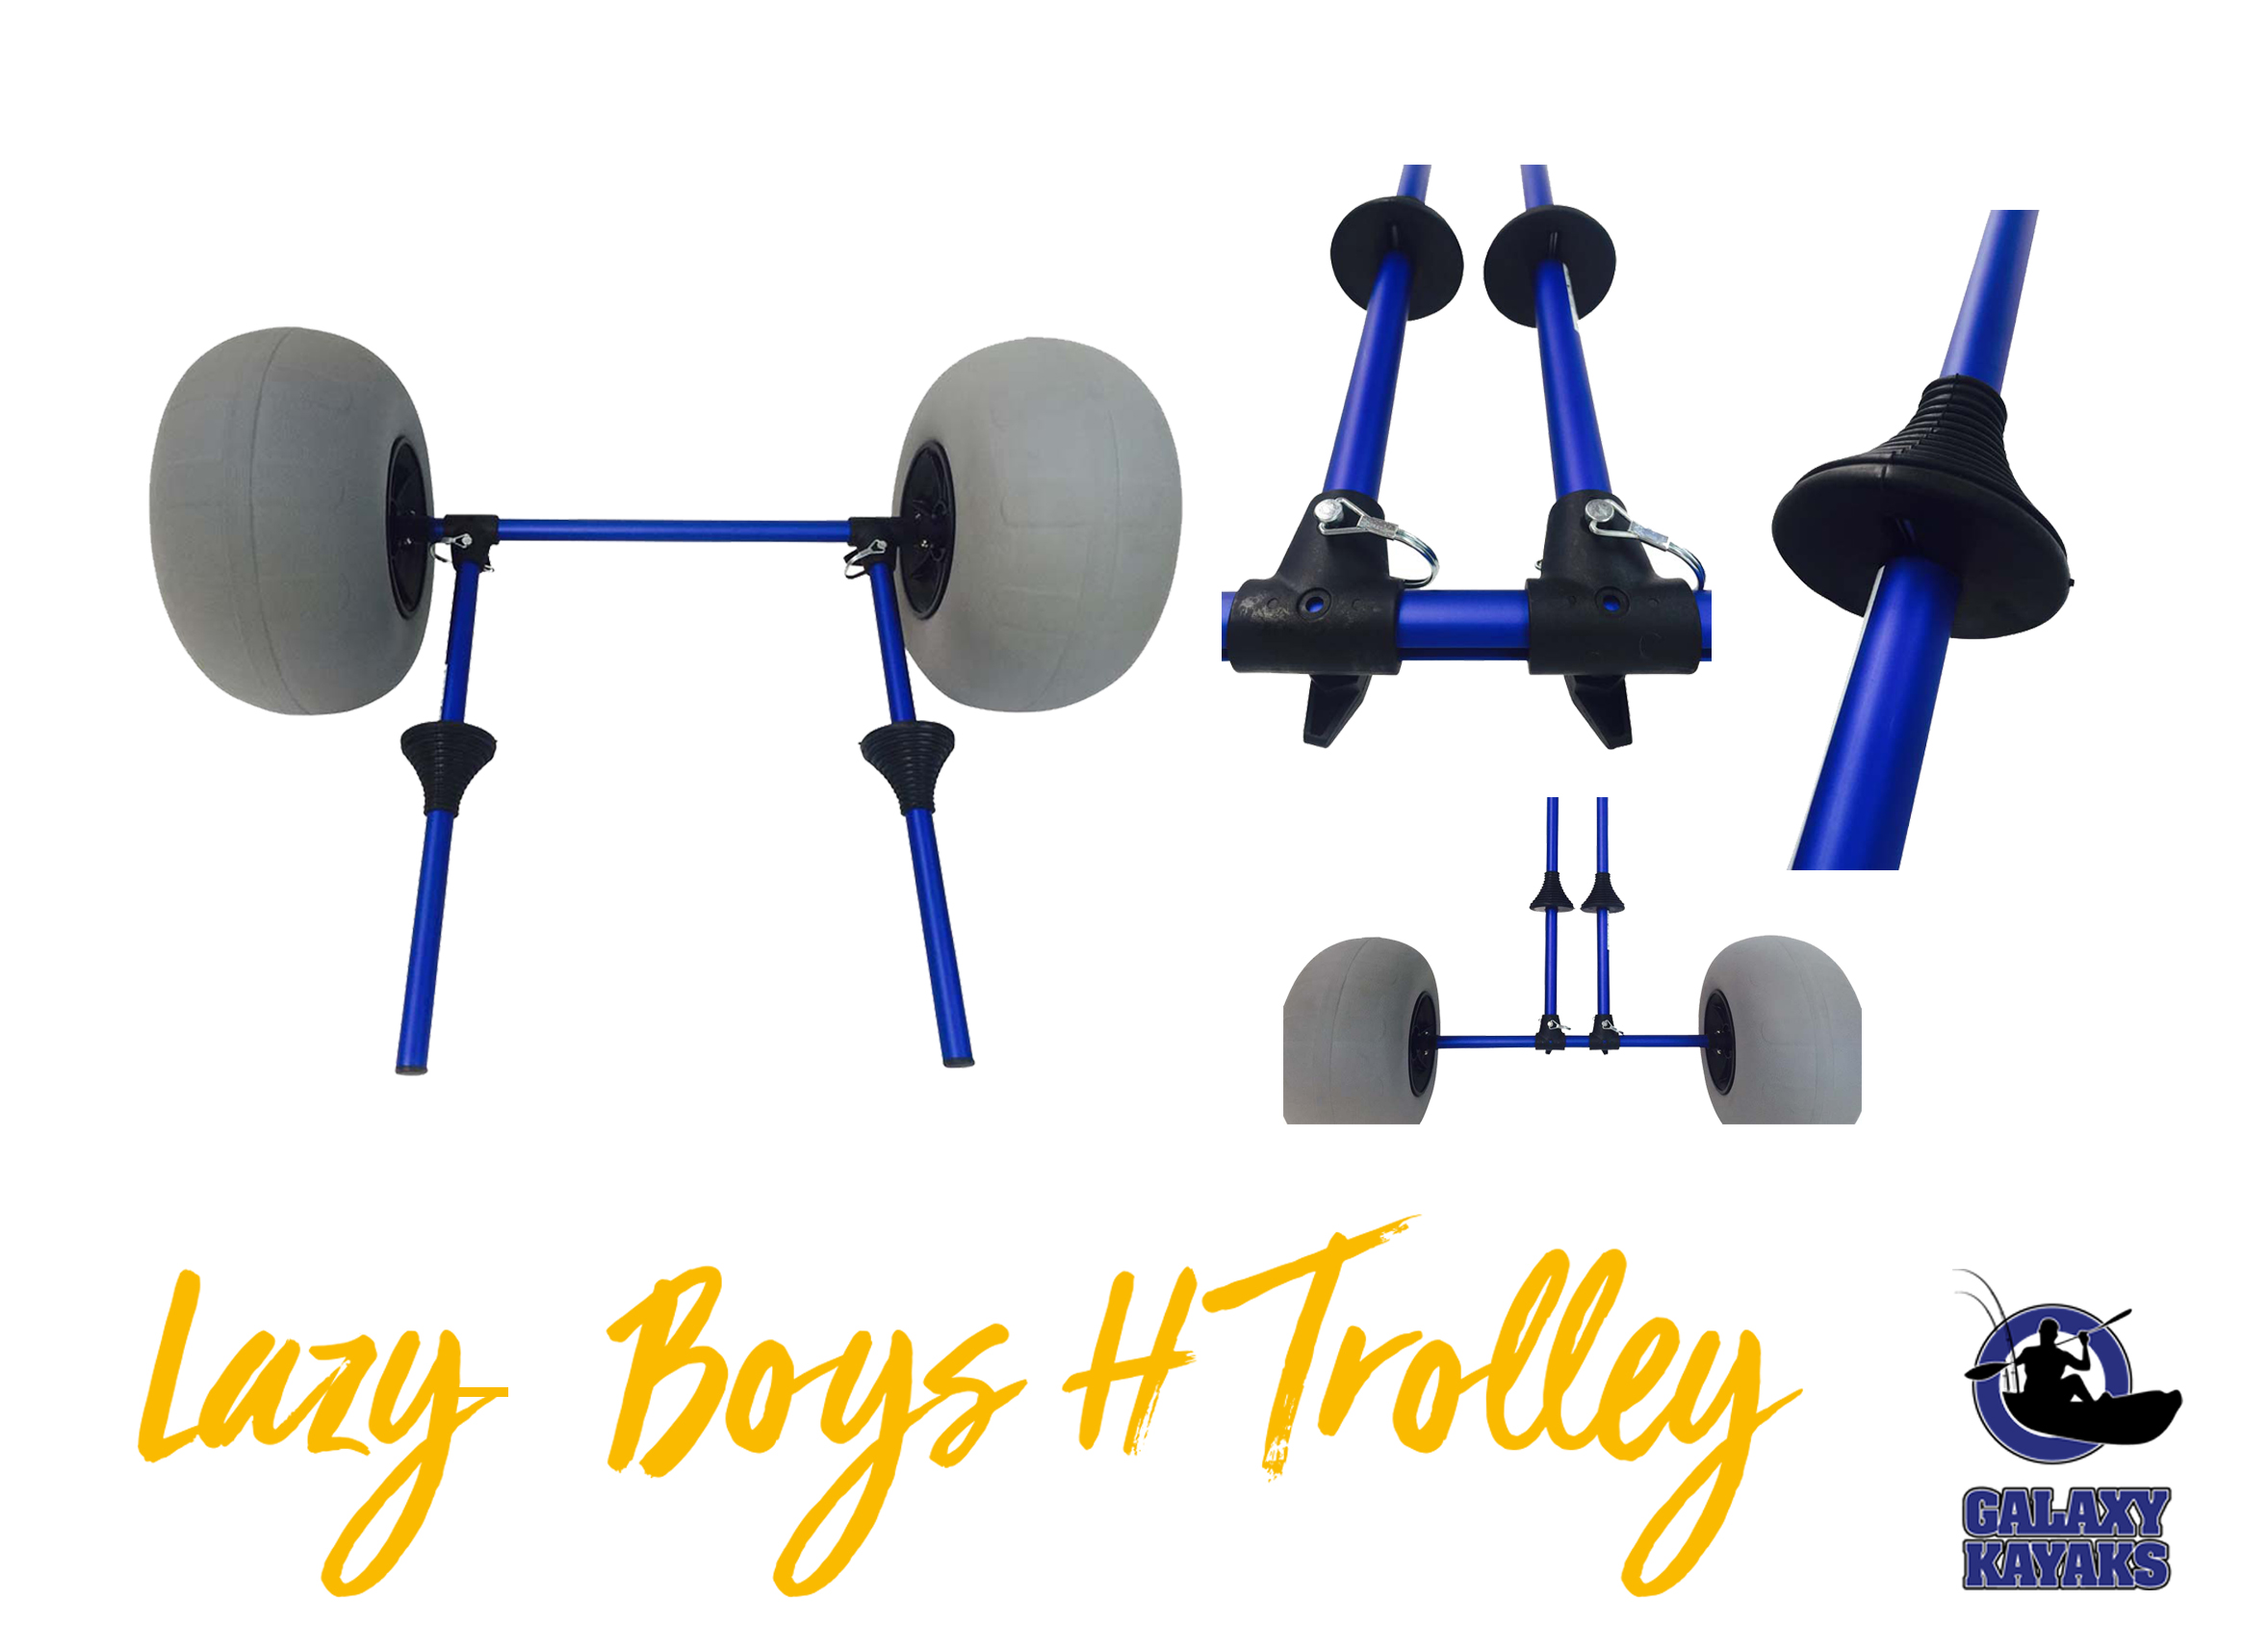 Lazy-Boys H Trolley